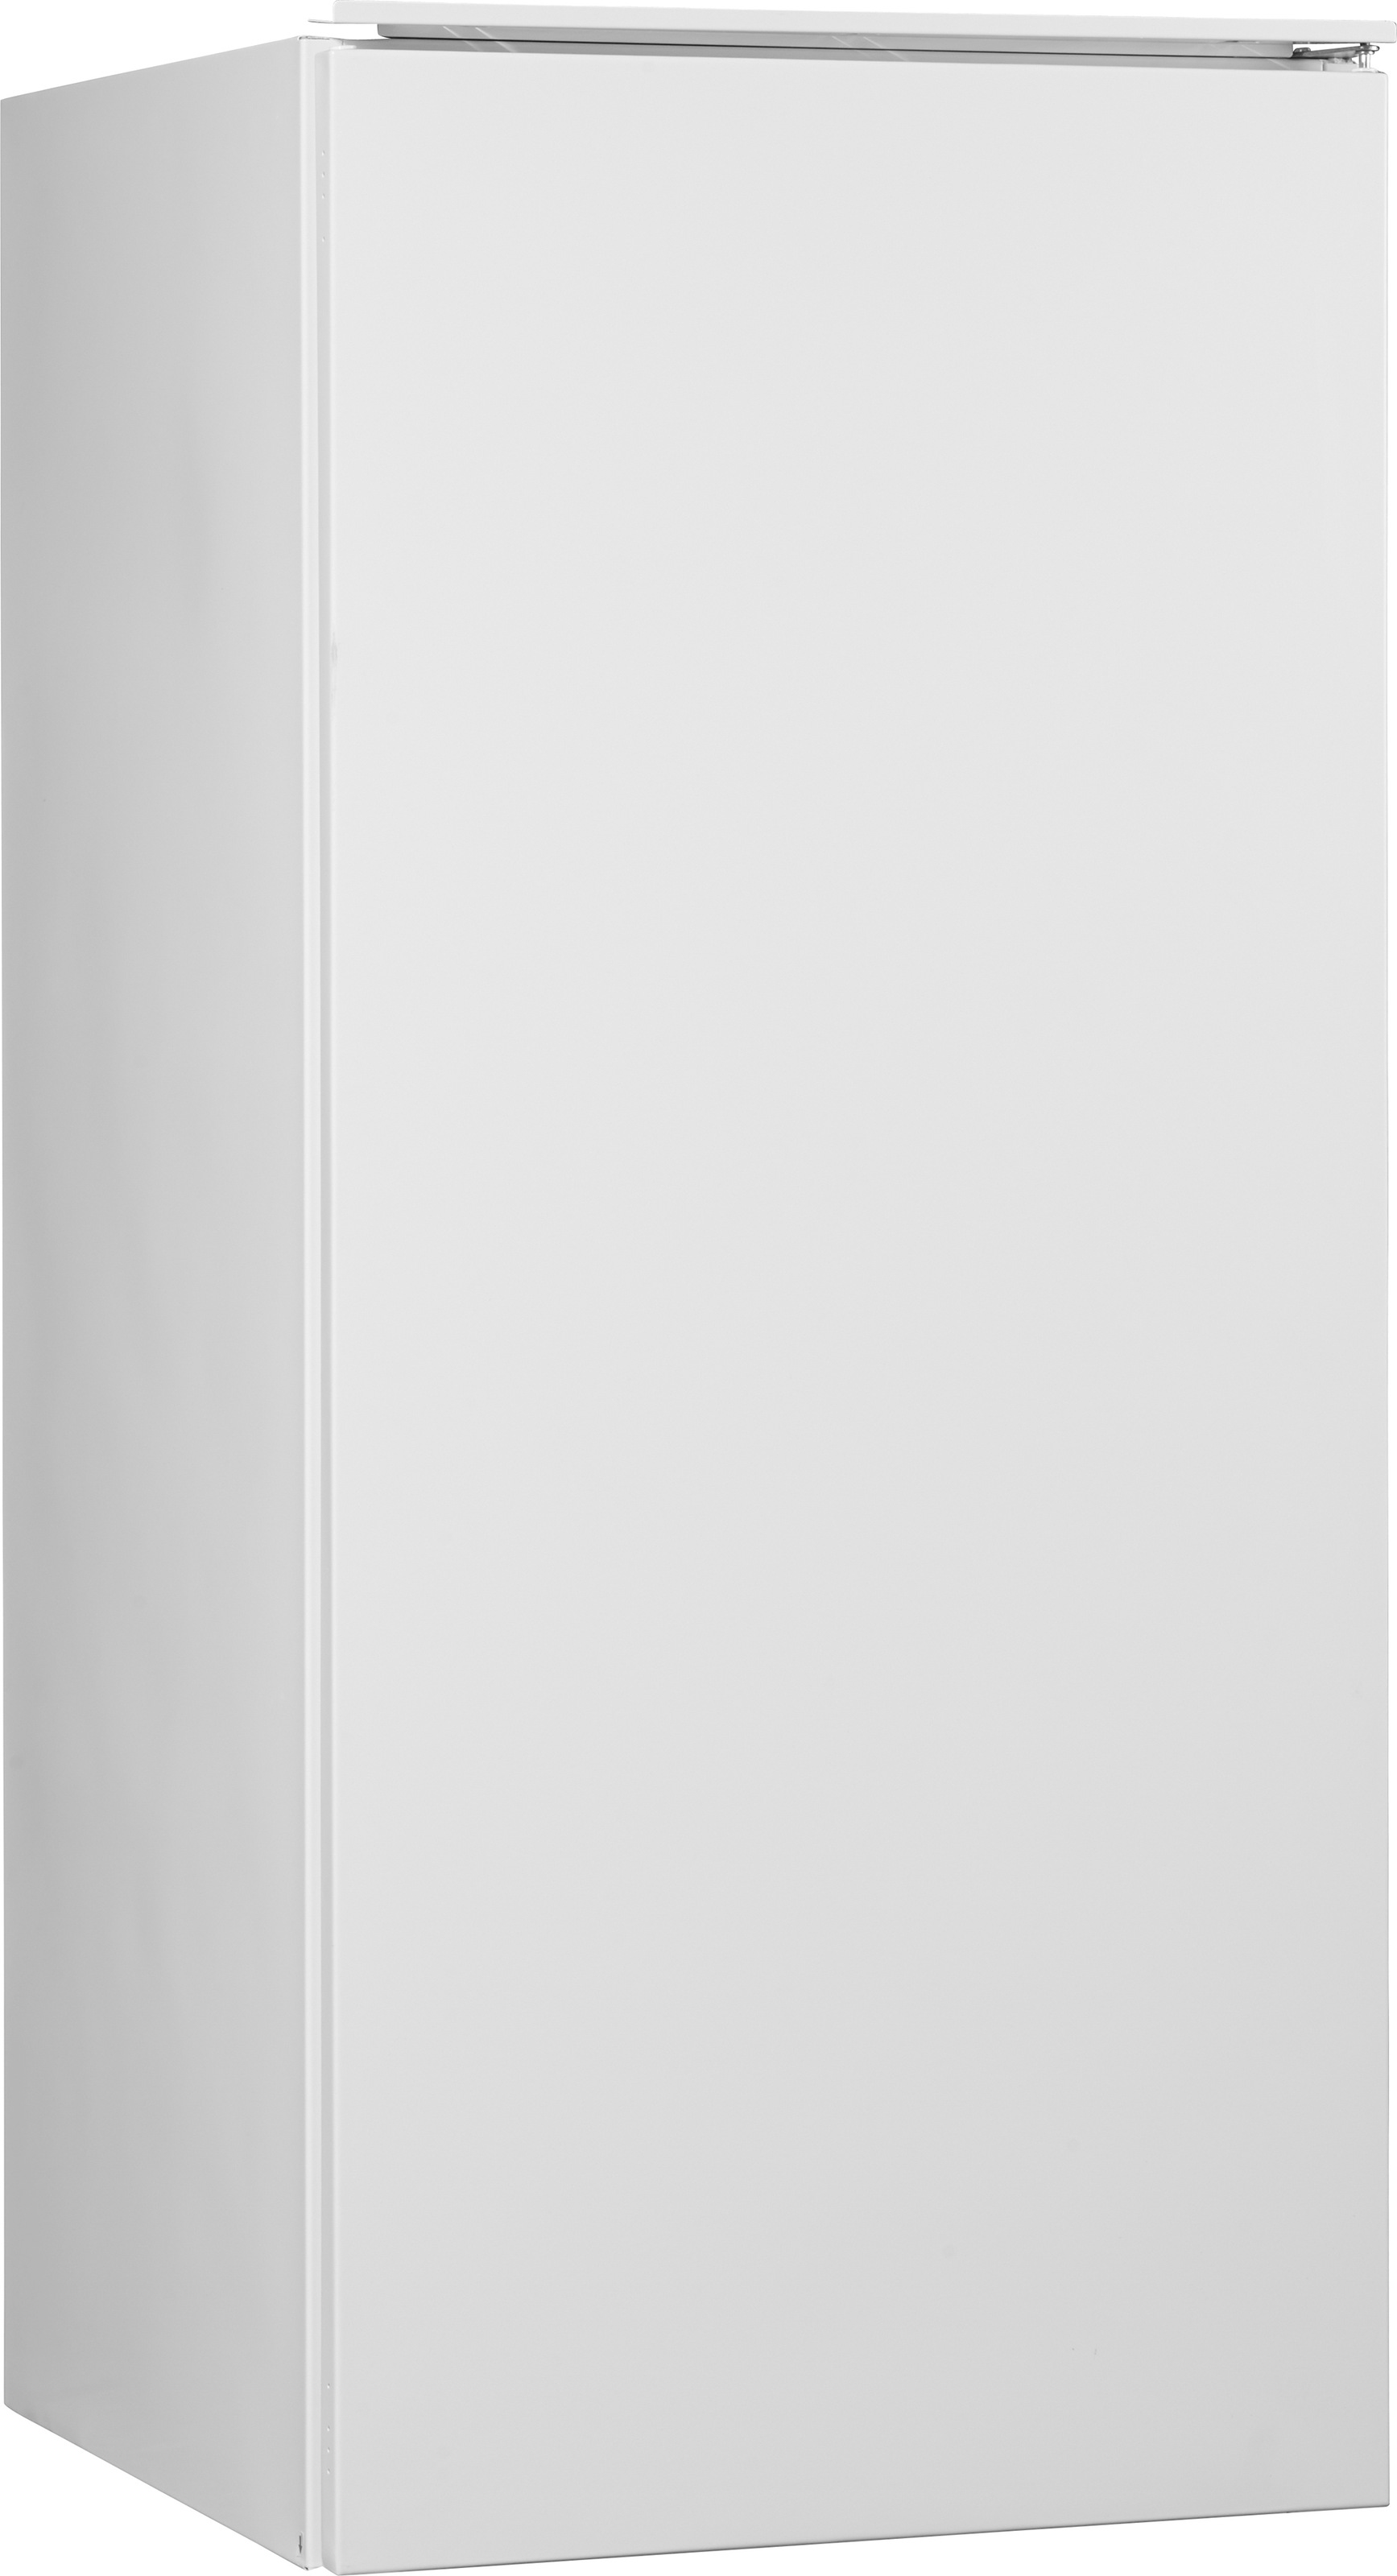 Hanseatic Einbaukühlschrank, HEKS12254GF, 123 cm hoch, 54 cm breit